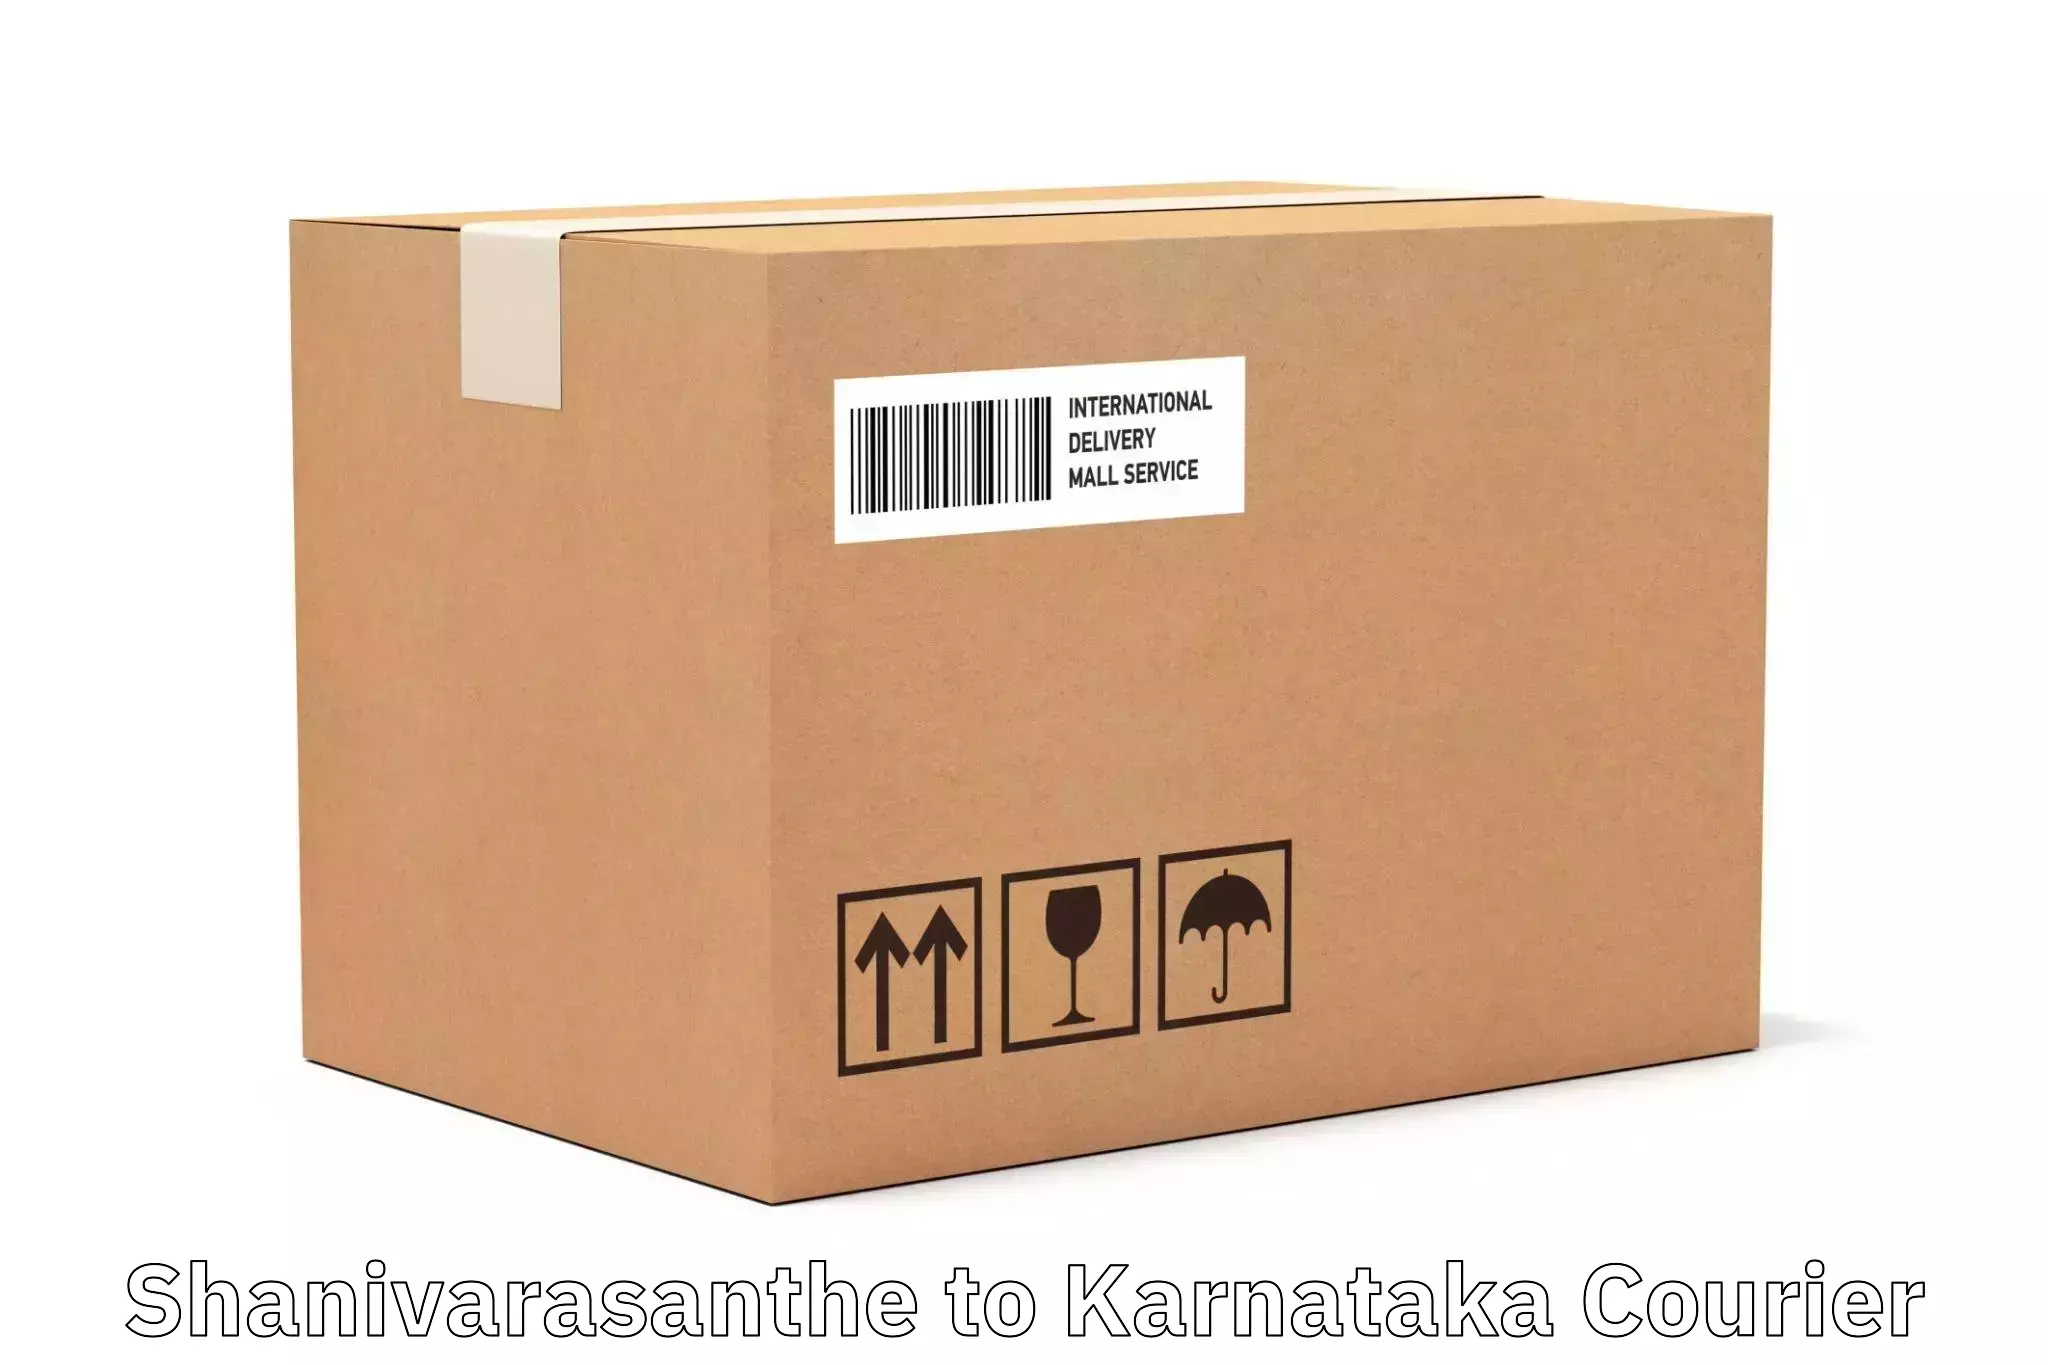 Customer-centric shipping Shanivarasanthe to Yaragatti